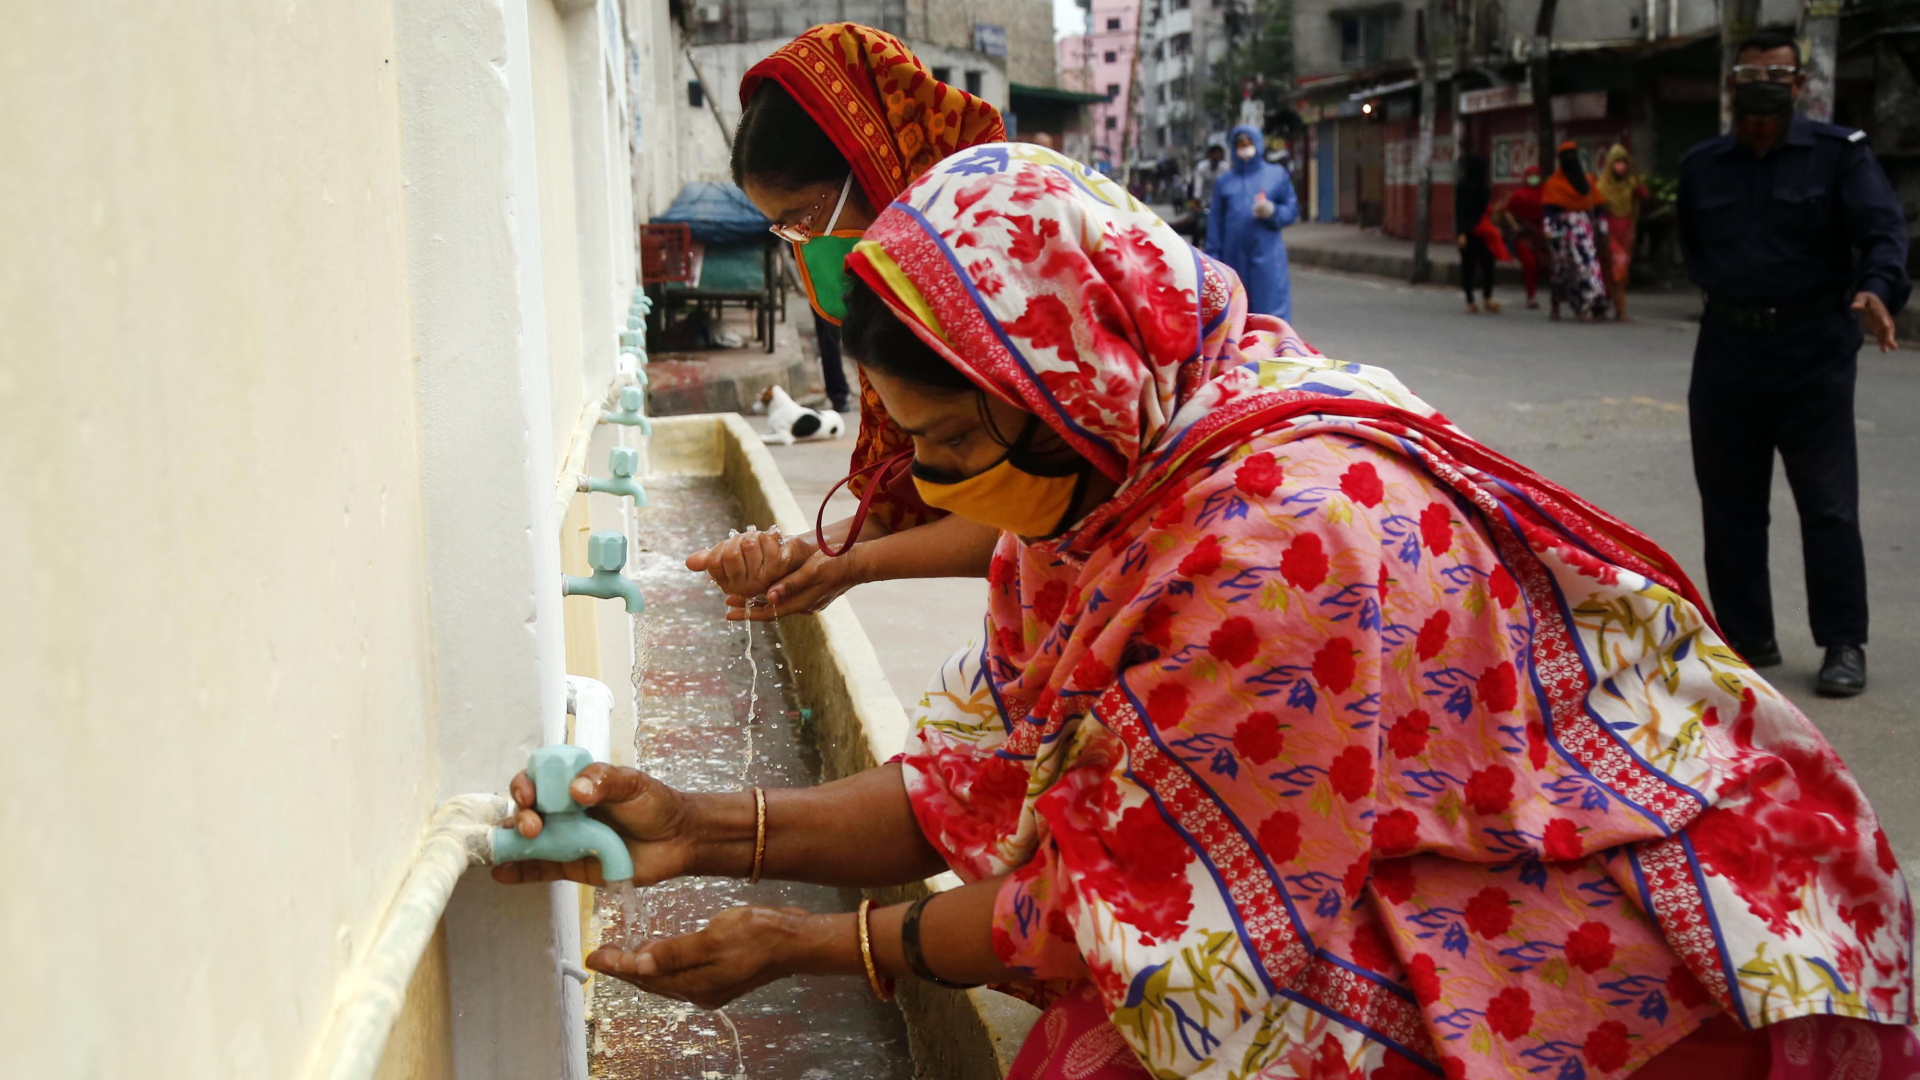 Textilarbeiterinnen in bangladesch | Bildquelle: MONIRUL ALAM/EPA-EFE/Shutterstoc